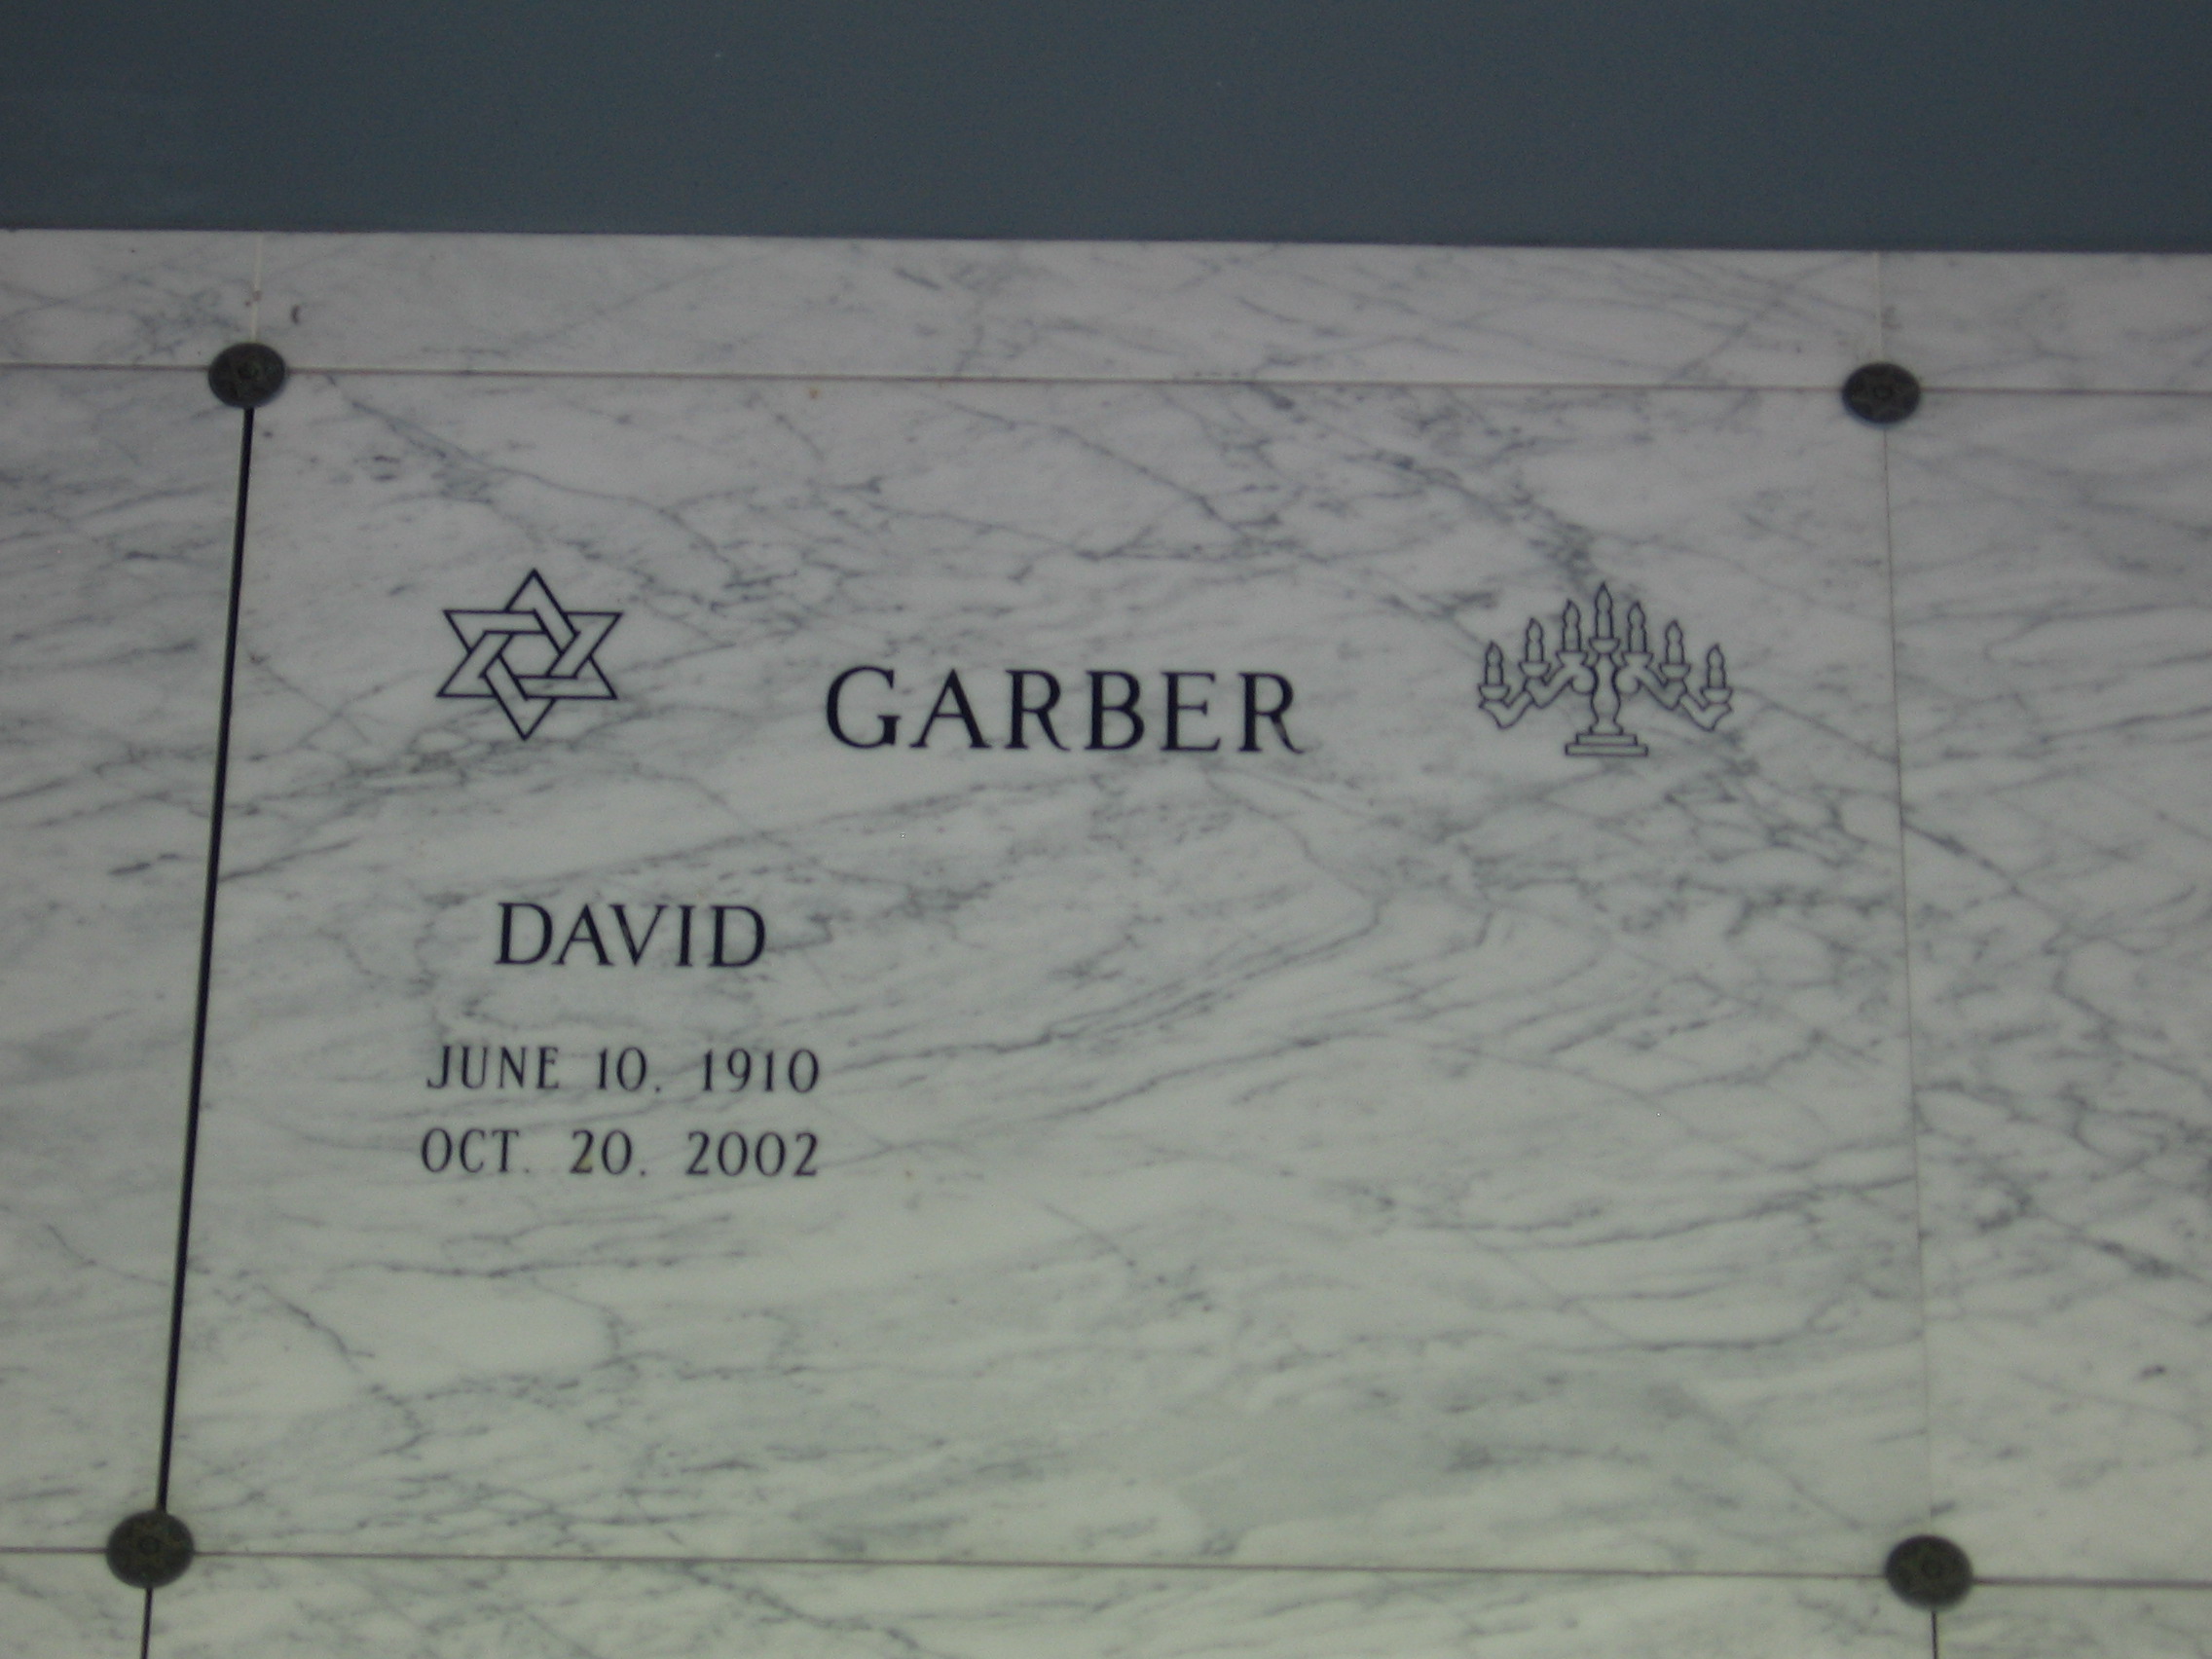 David Garber